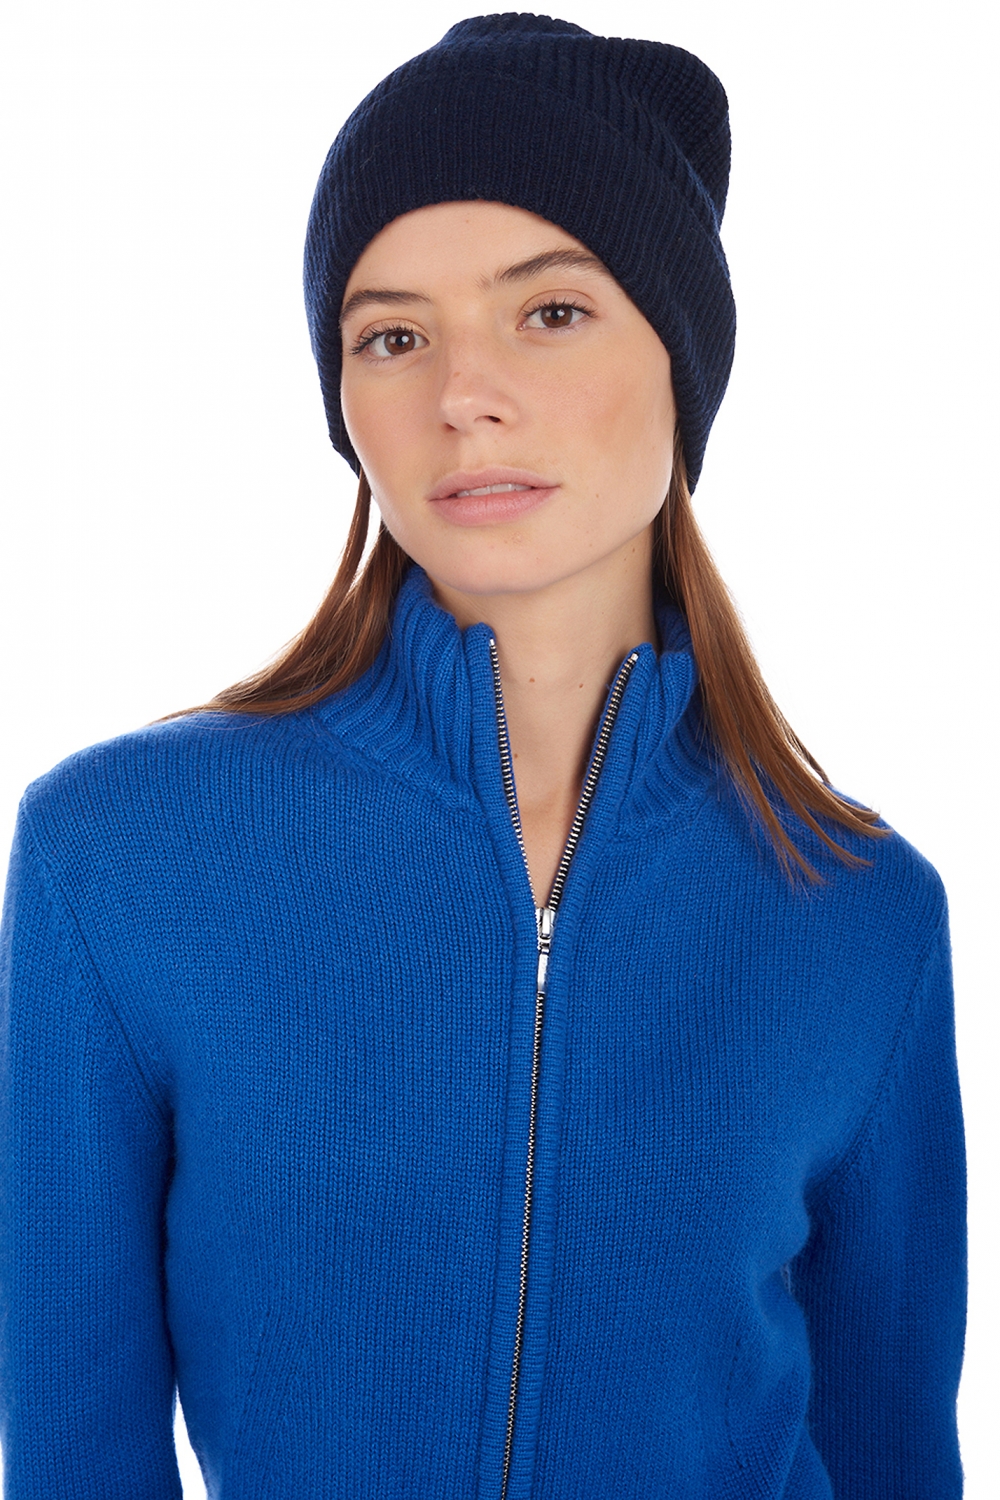 Cashmere accessories armix dress blue 24 x 23 cm